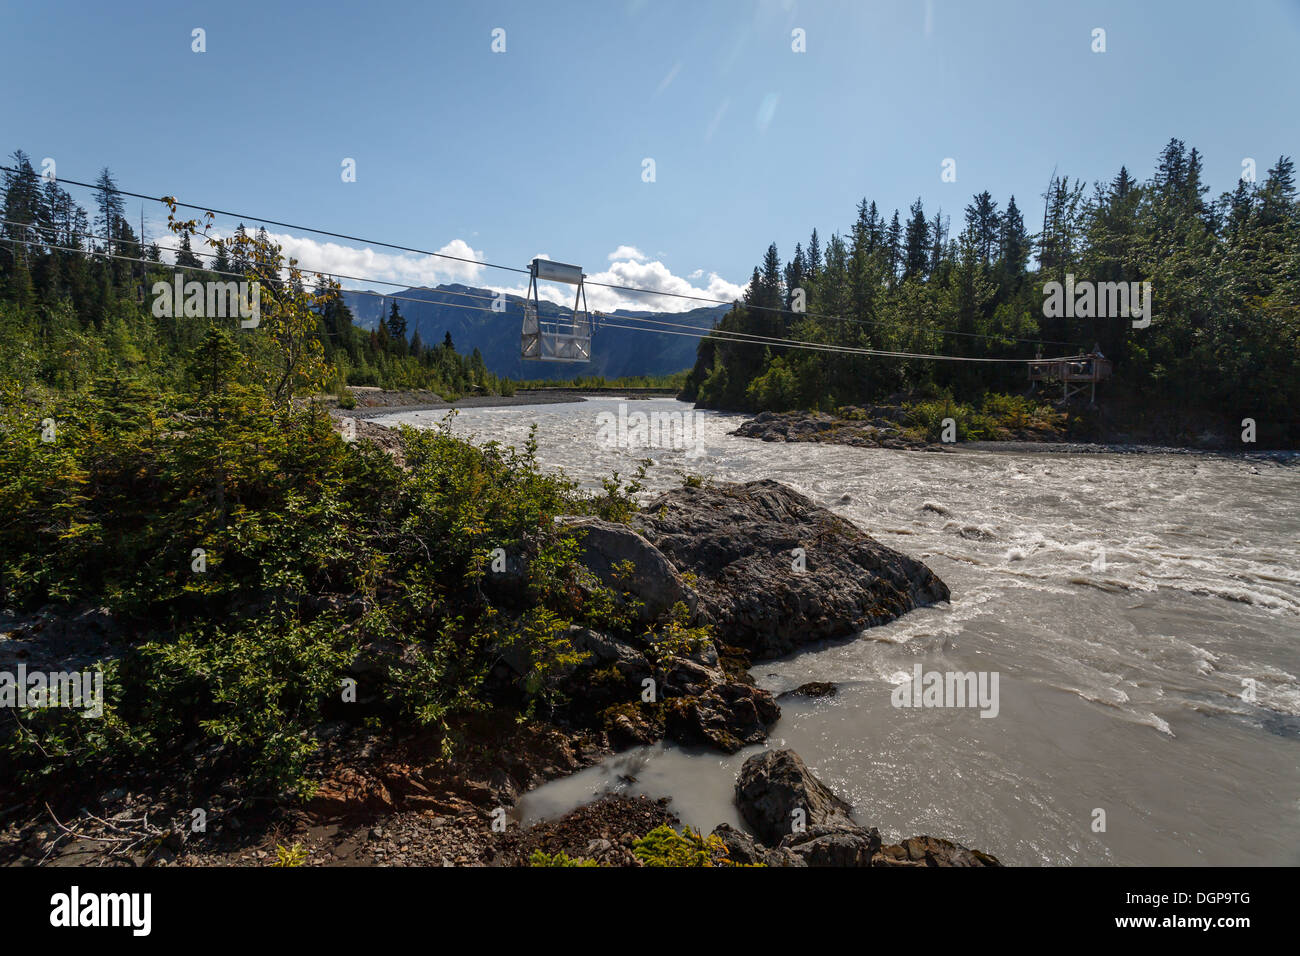 Überquerung des Flusses mit Kabel Riemenscheibe Cart in Alaska Wildnis Stockfoto